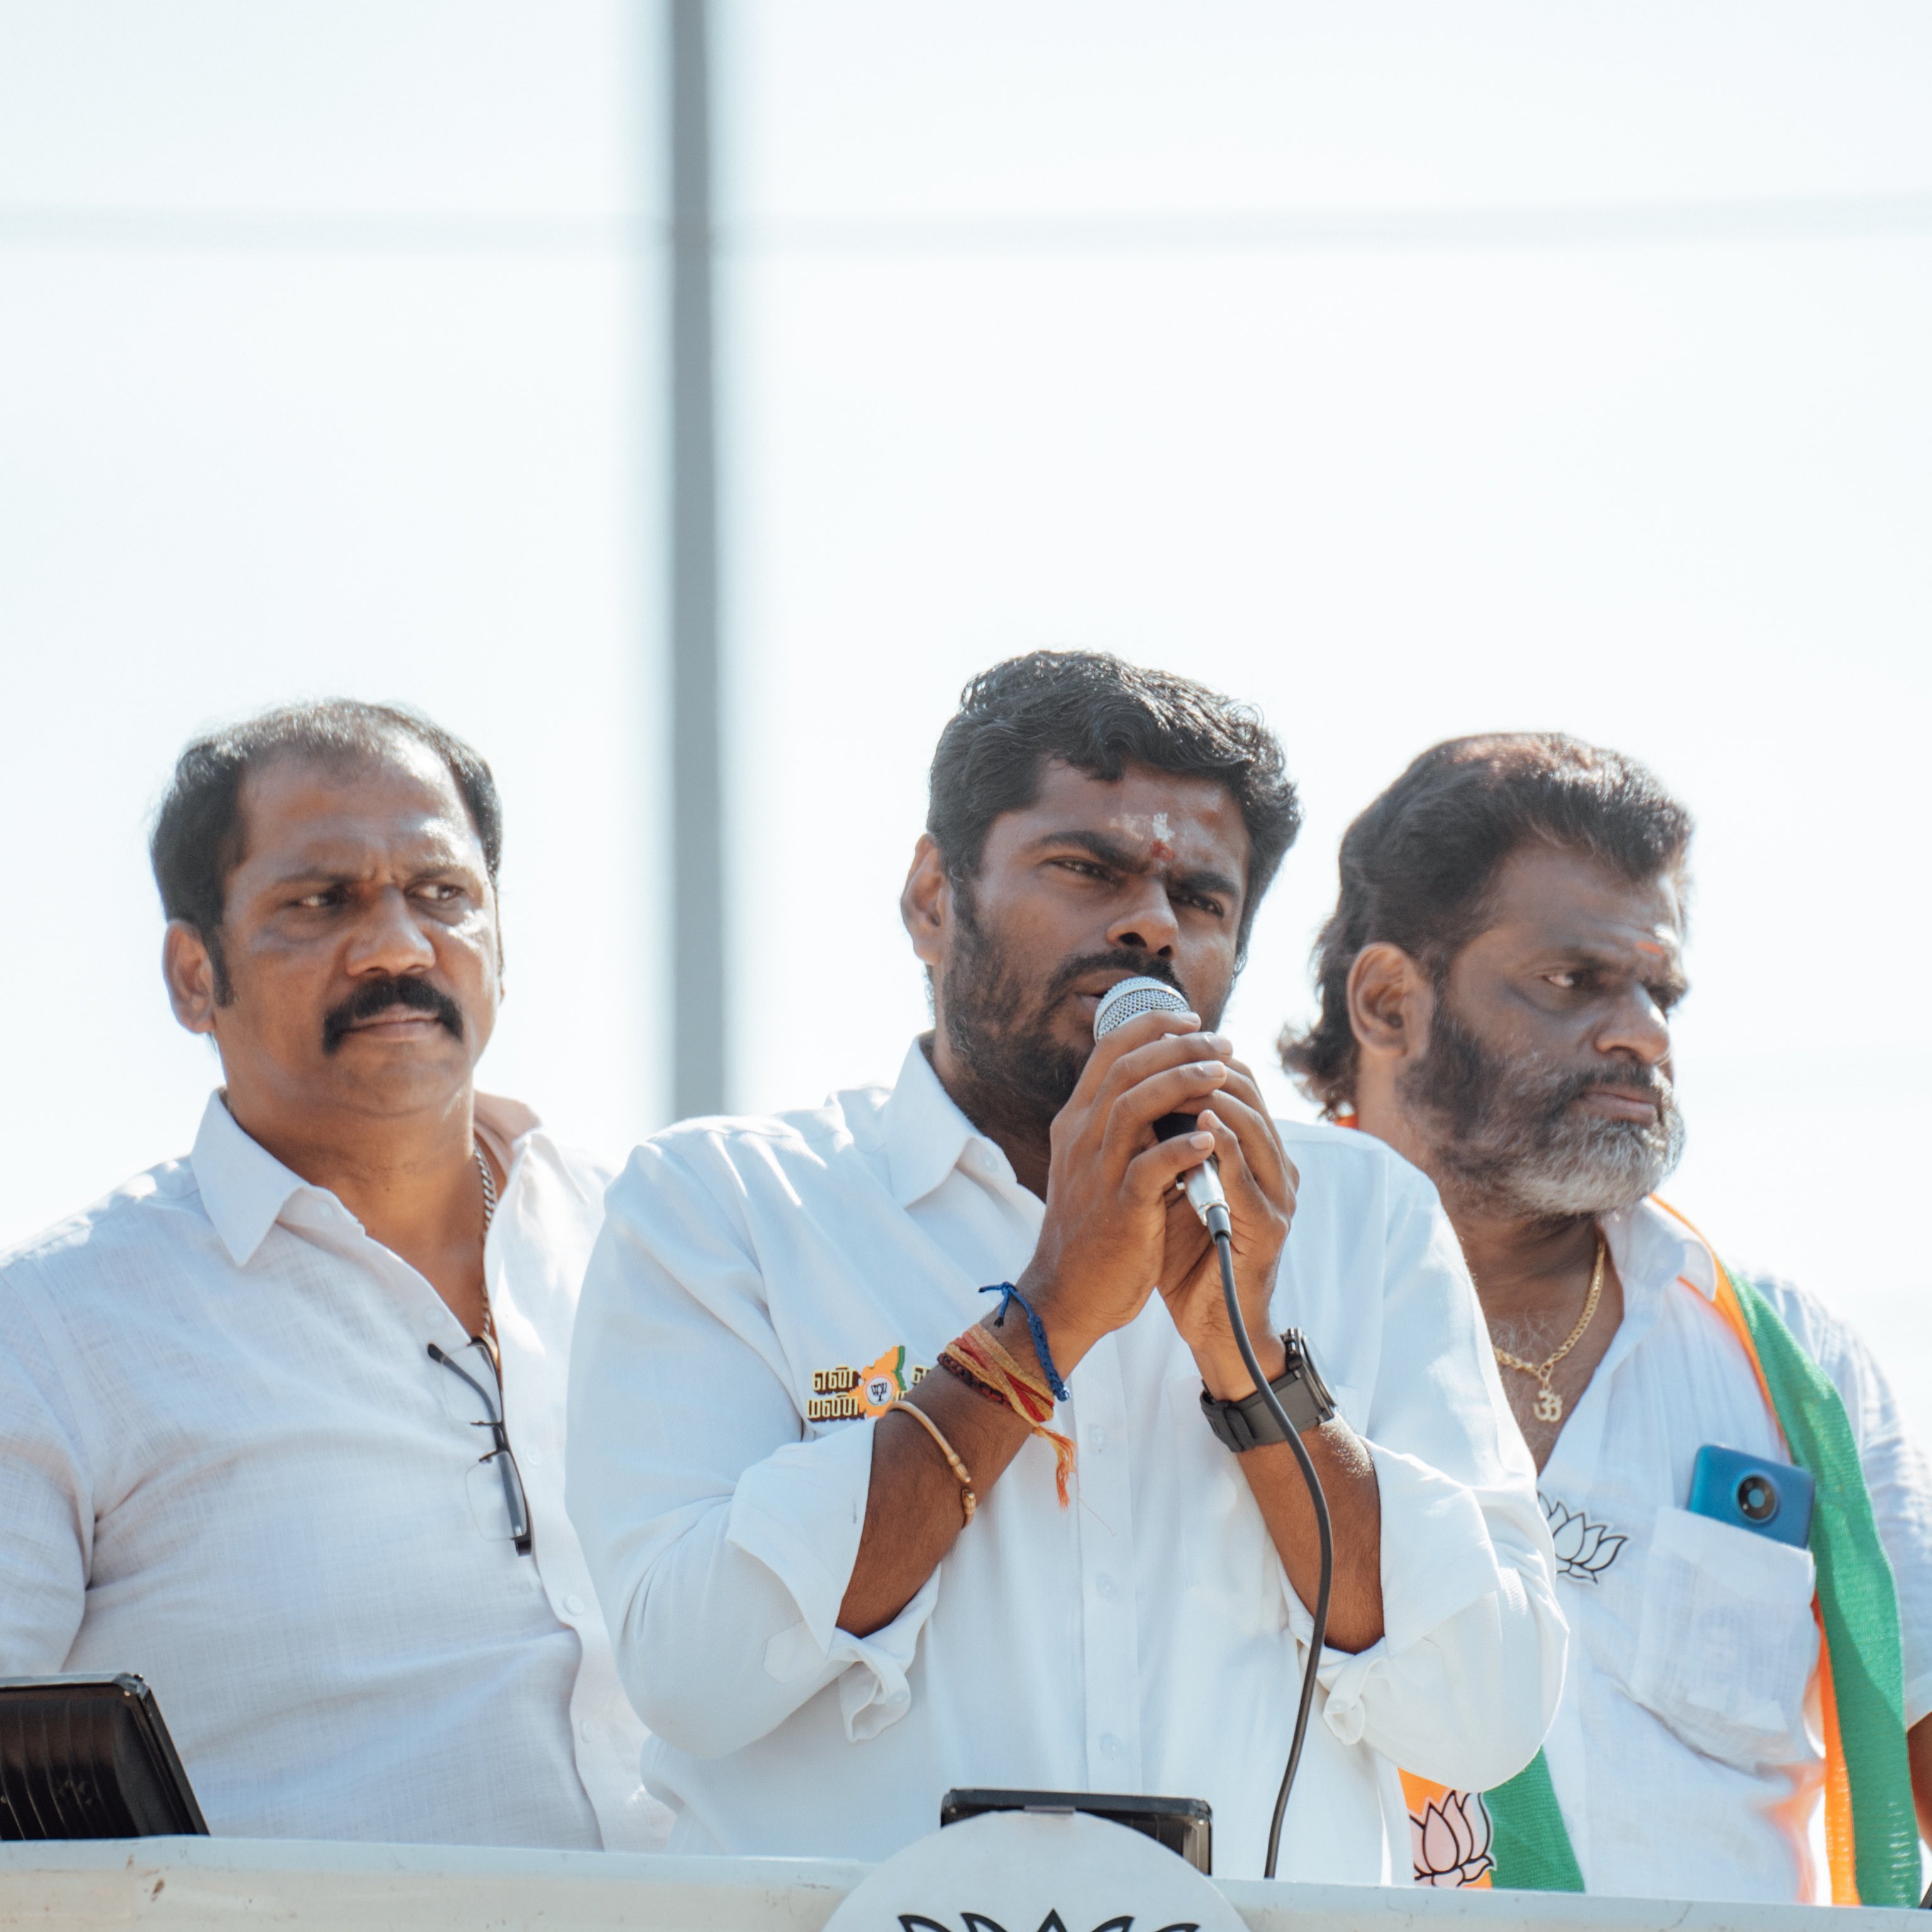 लोकसभा चुनाव के बीच तमिलनाडु में अन्नामलै के नेतृत्व में भाजपा की निखरती रंगत